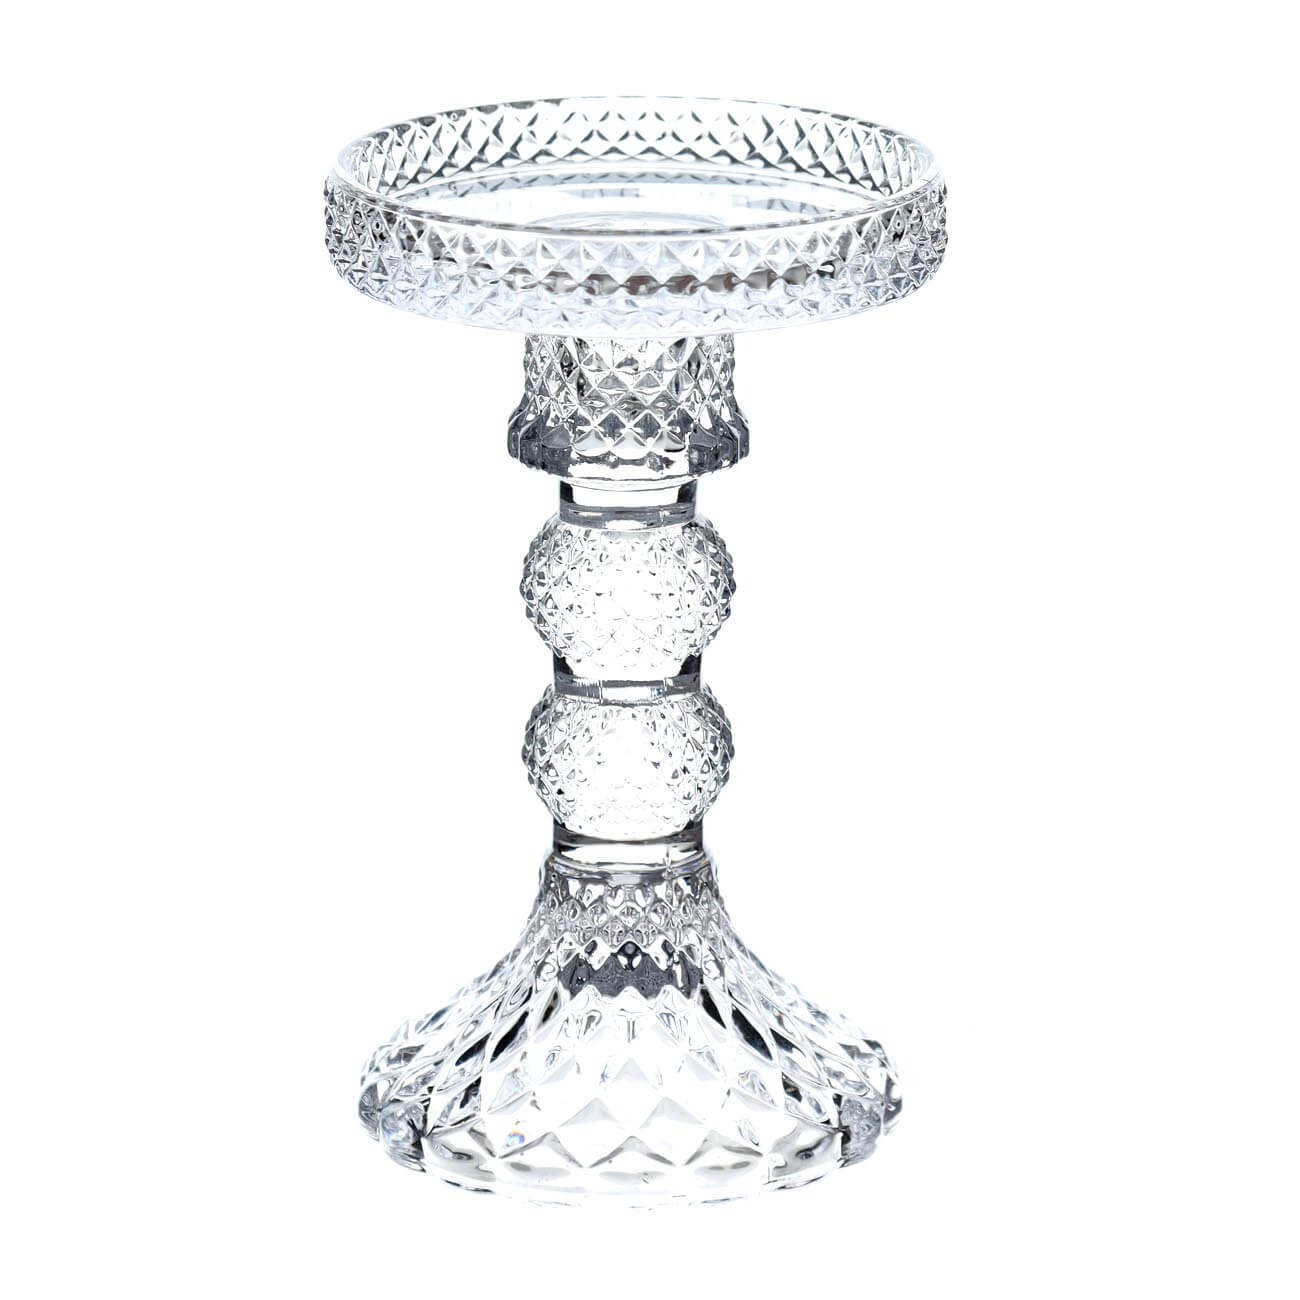 Подсвечник, 14 см, для одной свечи, на ножке, стекло, Naiad kuchenland набор для ванной 3 пр стекло пластик naiad